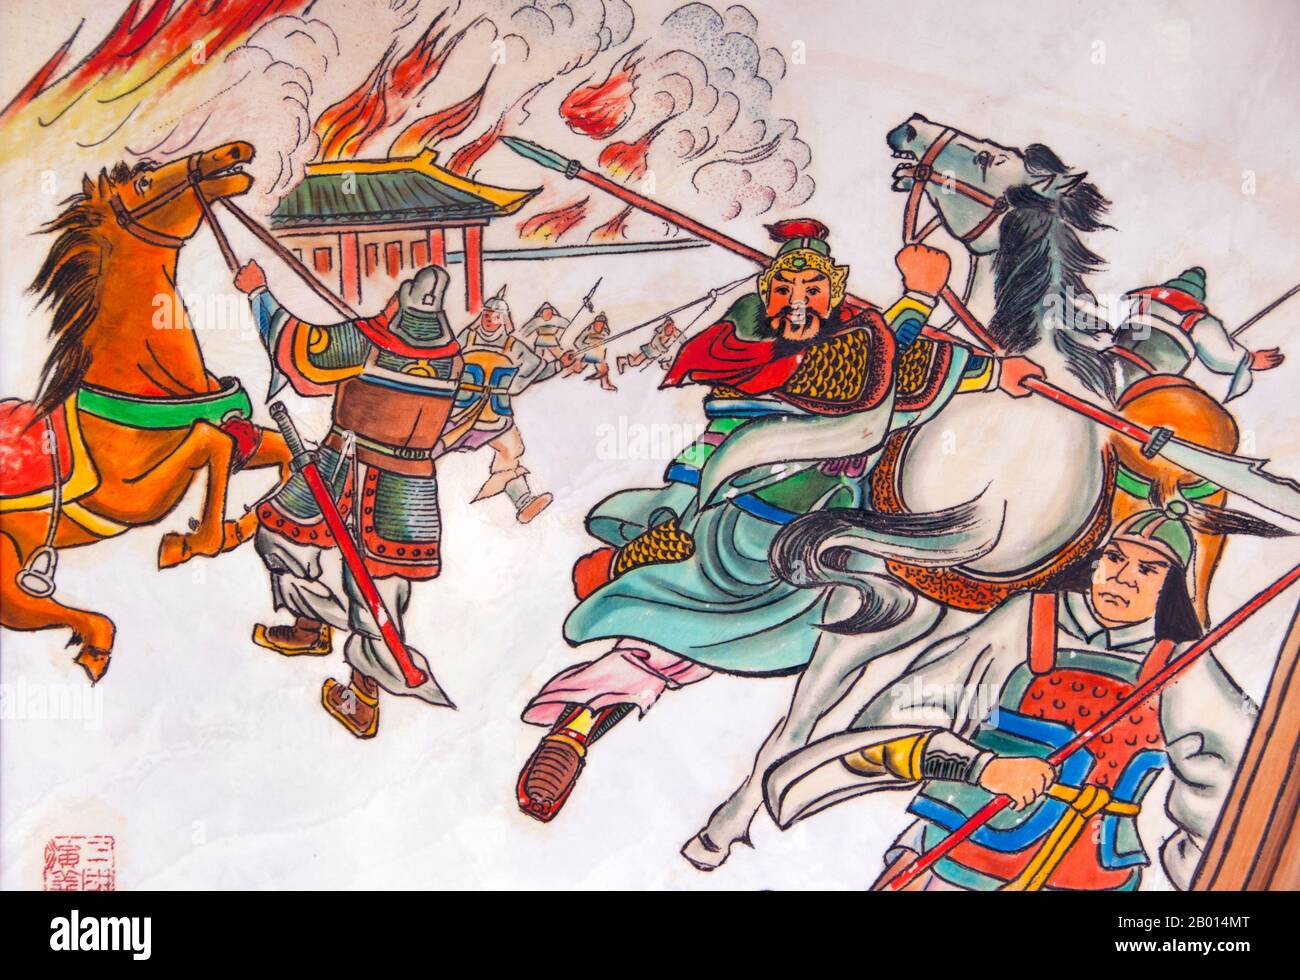 Cina: Scene da 'il romanticismo dei tre Regni, Wuhou ci (Wuhou Ancestral o Memorial Hall), Chengdu, provincia di Sichuan. Wuhou ci è dedicato a Zenorme Liang, eroe del classico 'il Romance dei tre Regni' e del suo imperatore, Liu bei. Zenorme Liang (181–234) è stato un cancelliere di Shu Han durante il periodo dei tre Regni della storia cinese. È spesso riconosciuto come il più grande e più compiuto stratega della sua epoca. Chengdu, precedentemente noto come Chengtu, è la capitale della provincia del Sichuan nella Cina sudoccidentale. Foto Stock